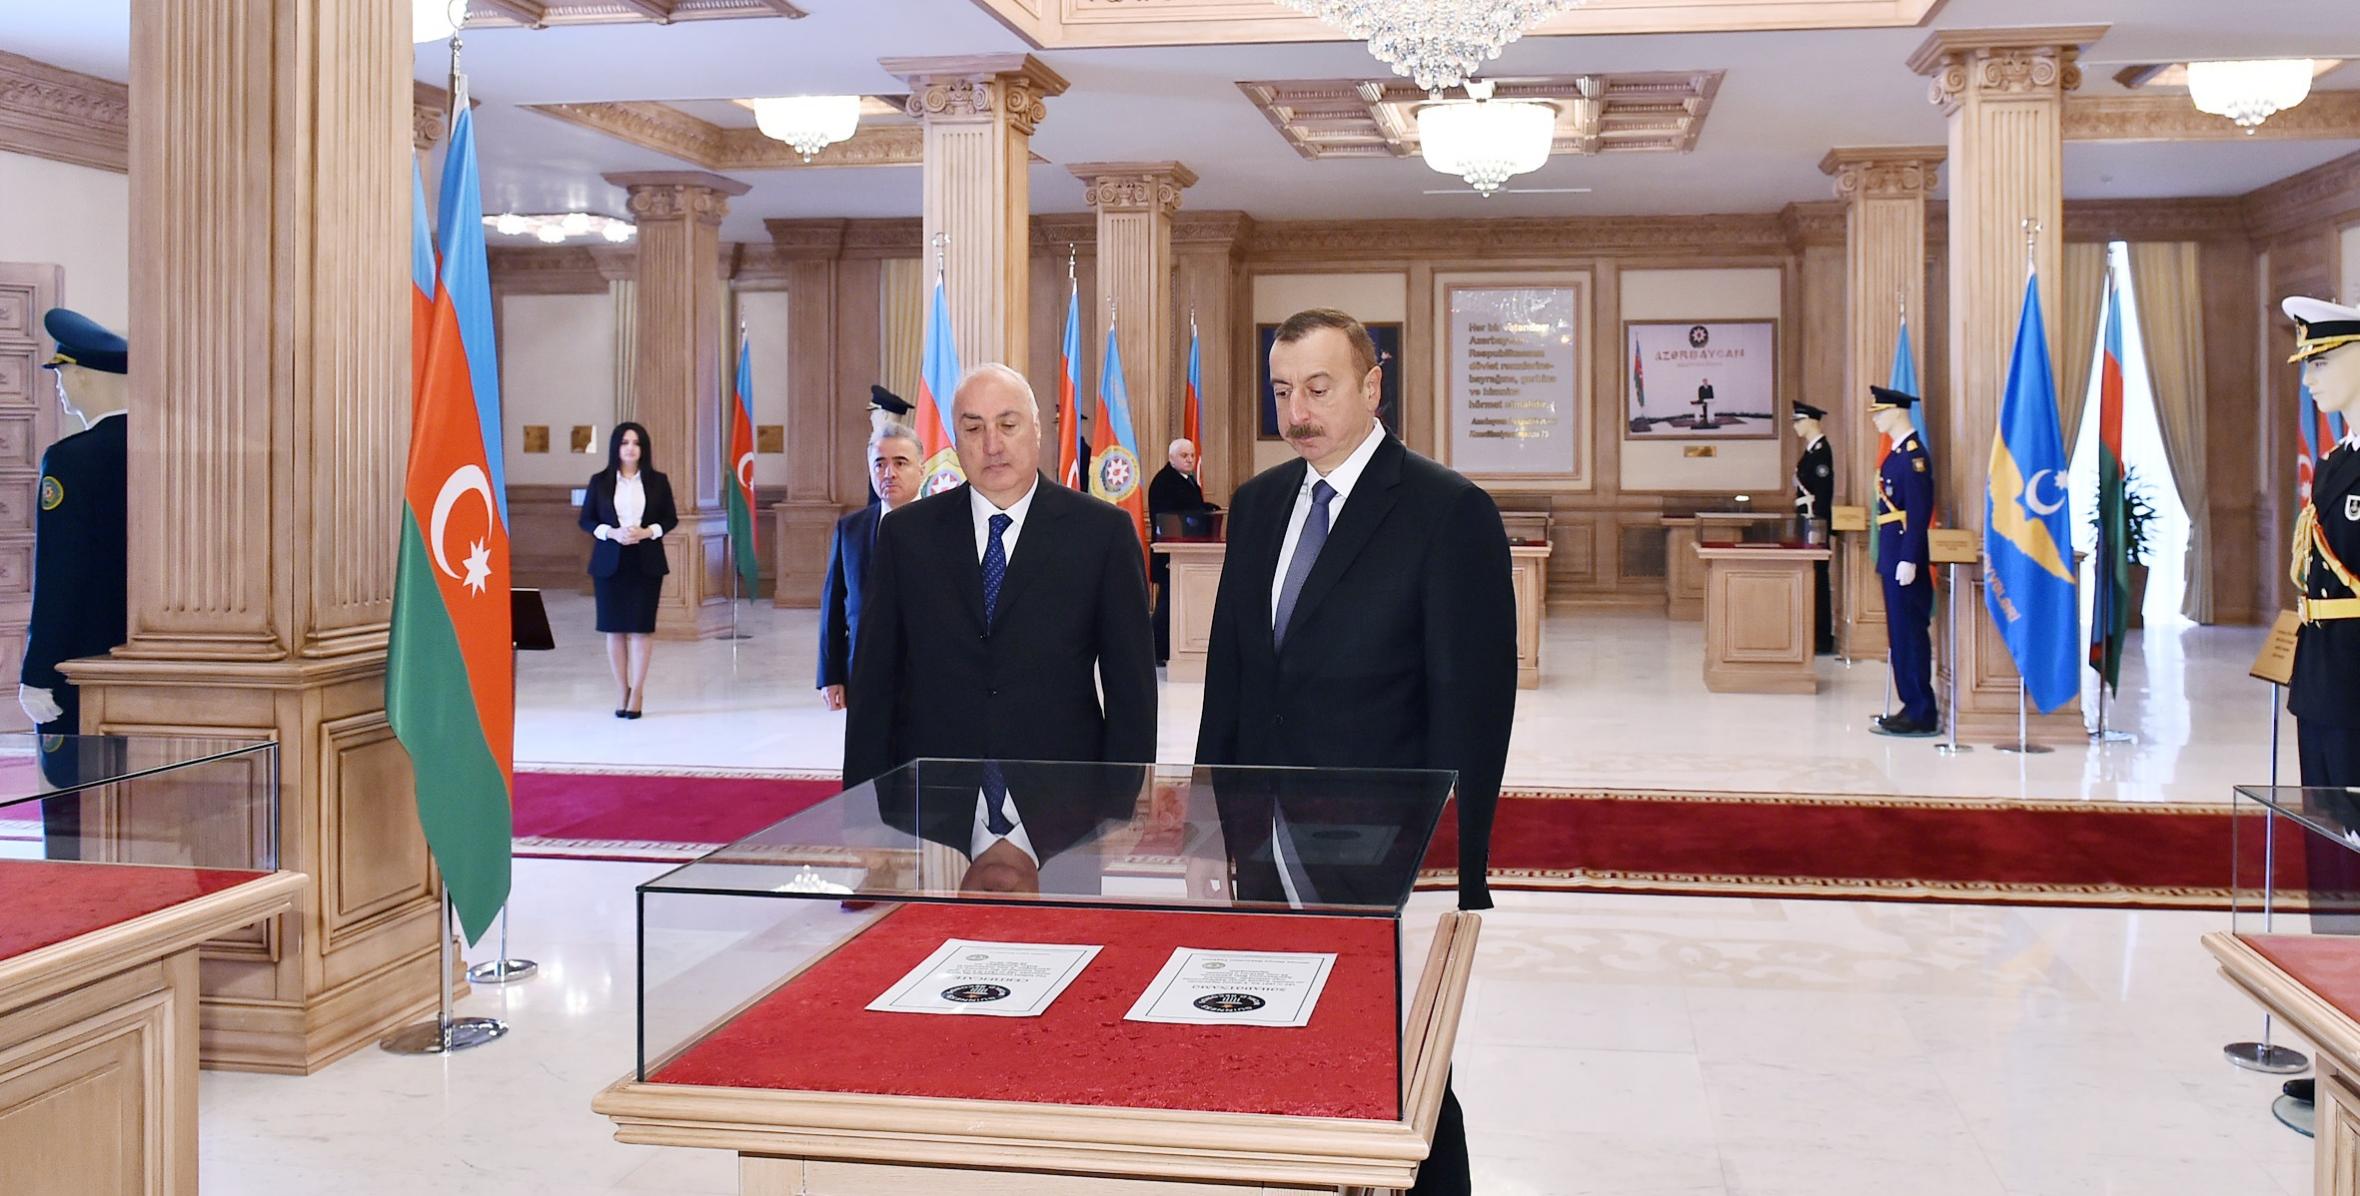 Ильхам Алиев принял участие в открытии Музея Флага в Сумгайыте